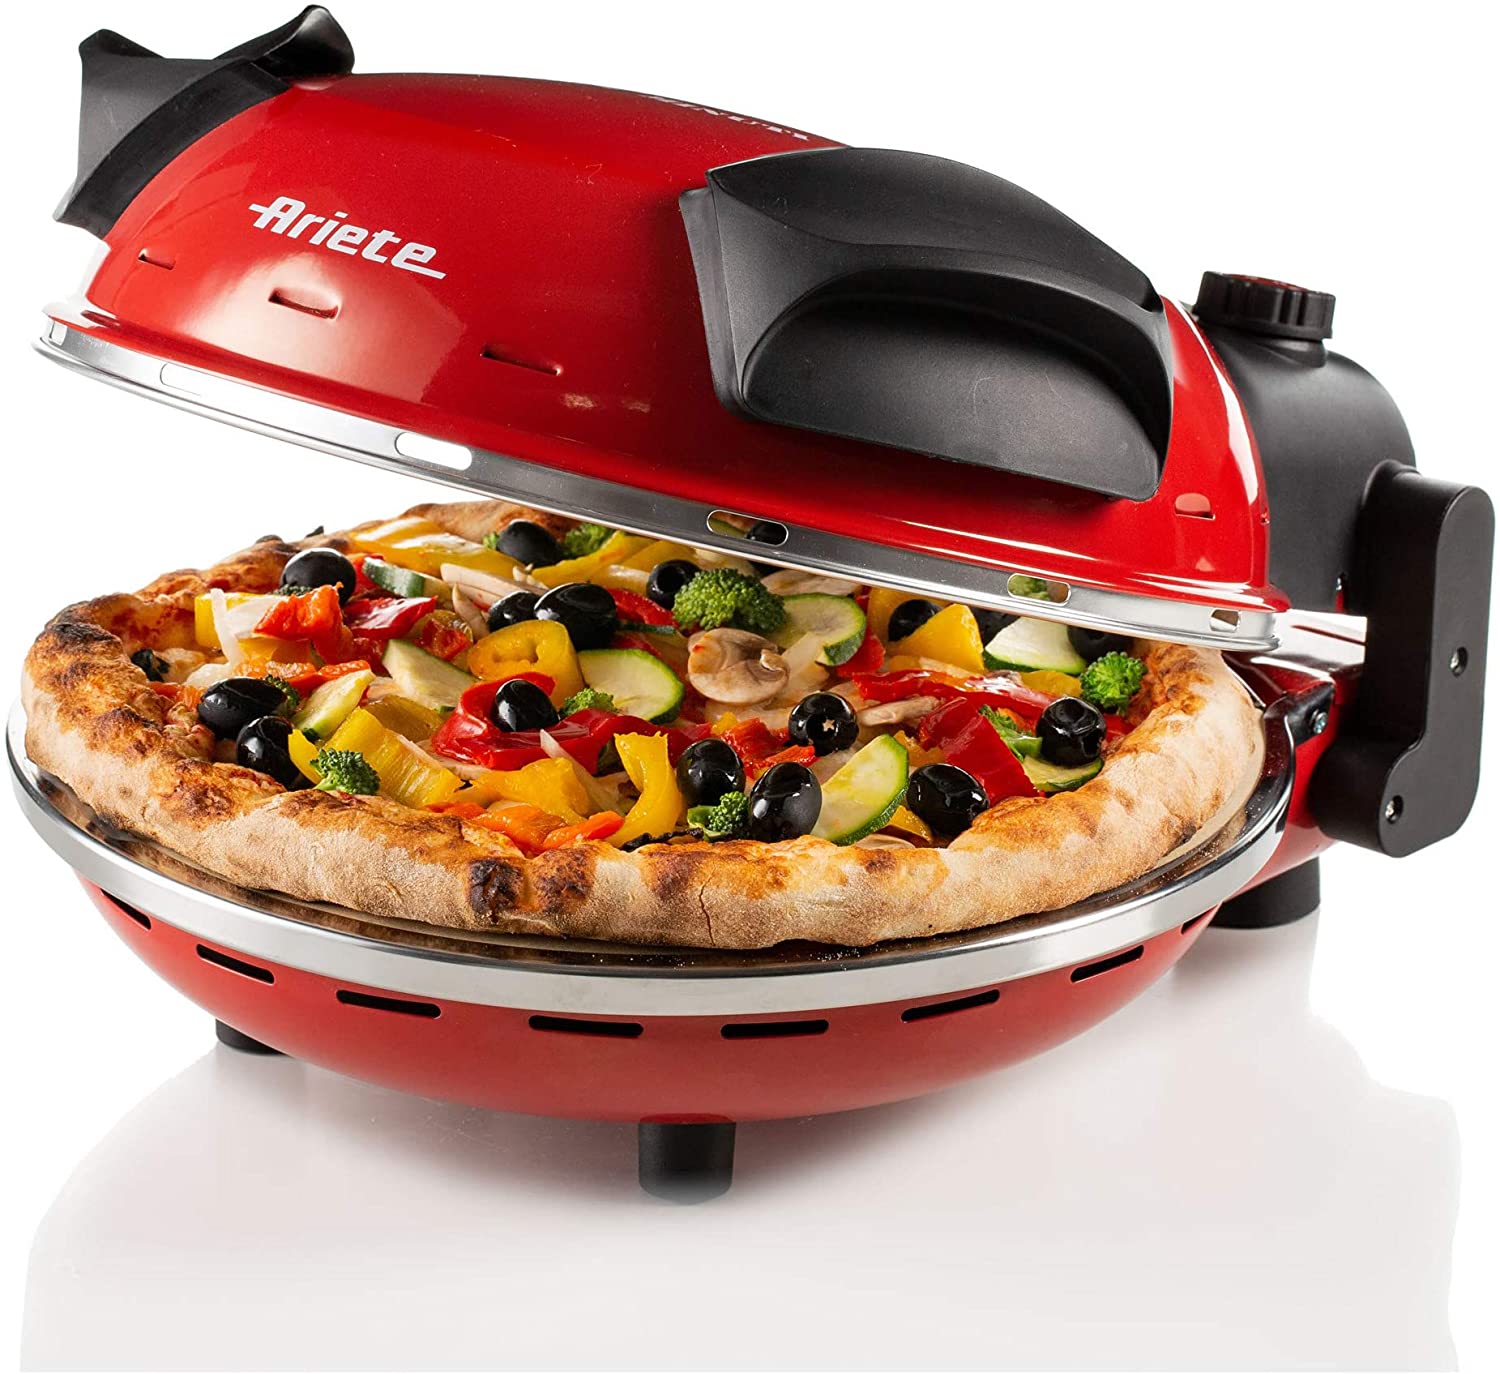 Forno per pizza elettrico Ariete 909 1200W 400 gradi fornetto rosso con timer